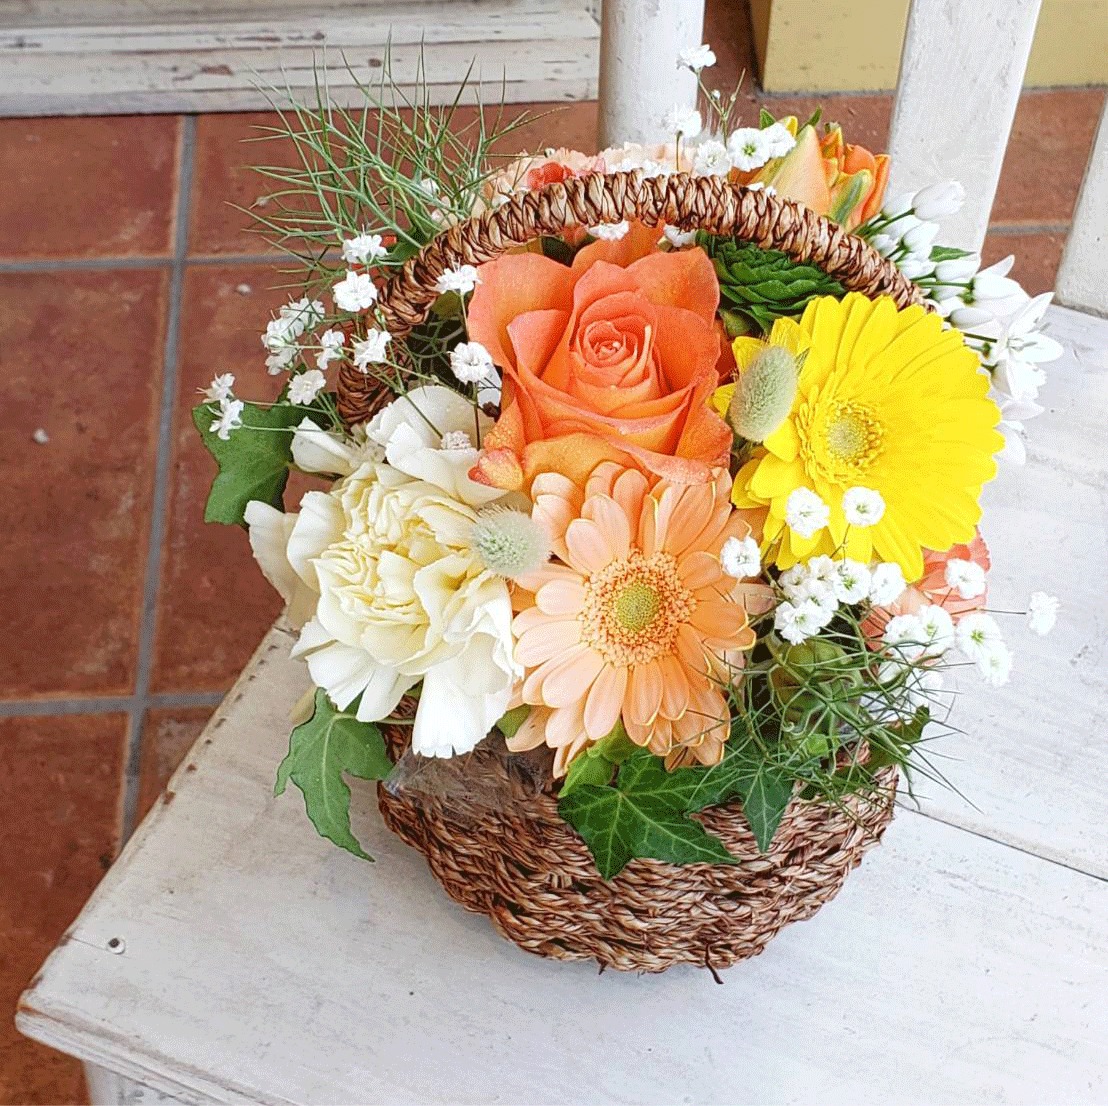 愛知県愛西市の花屋【花のひより園】のお祝い・ウェディング